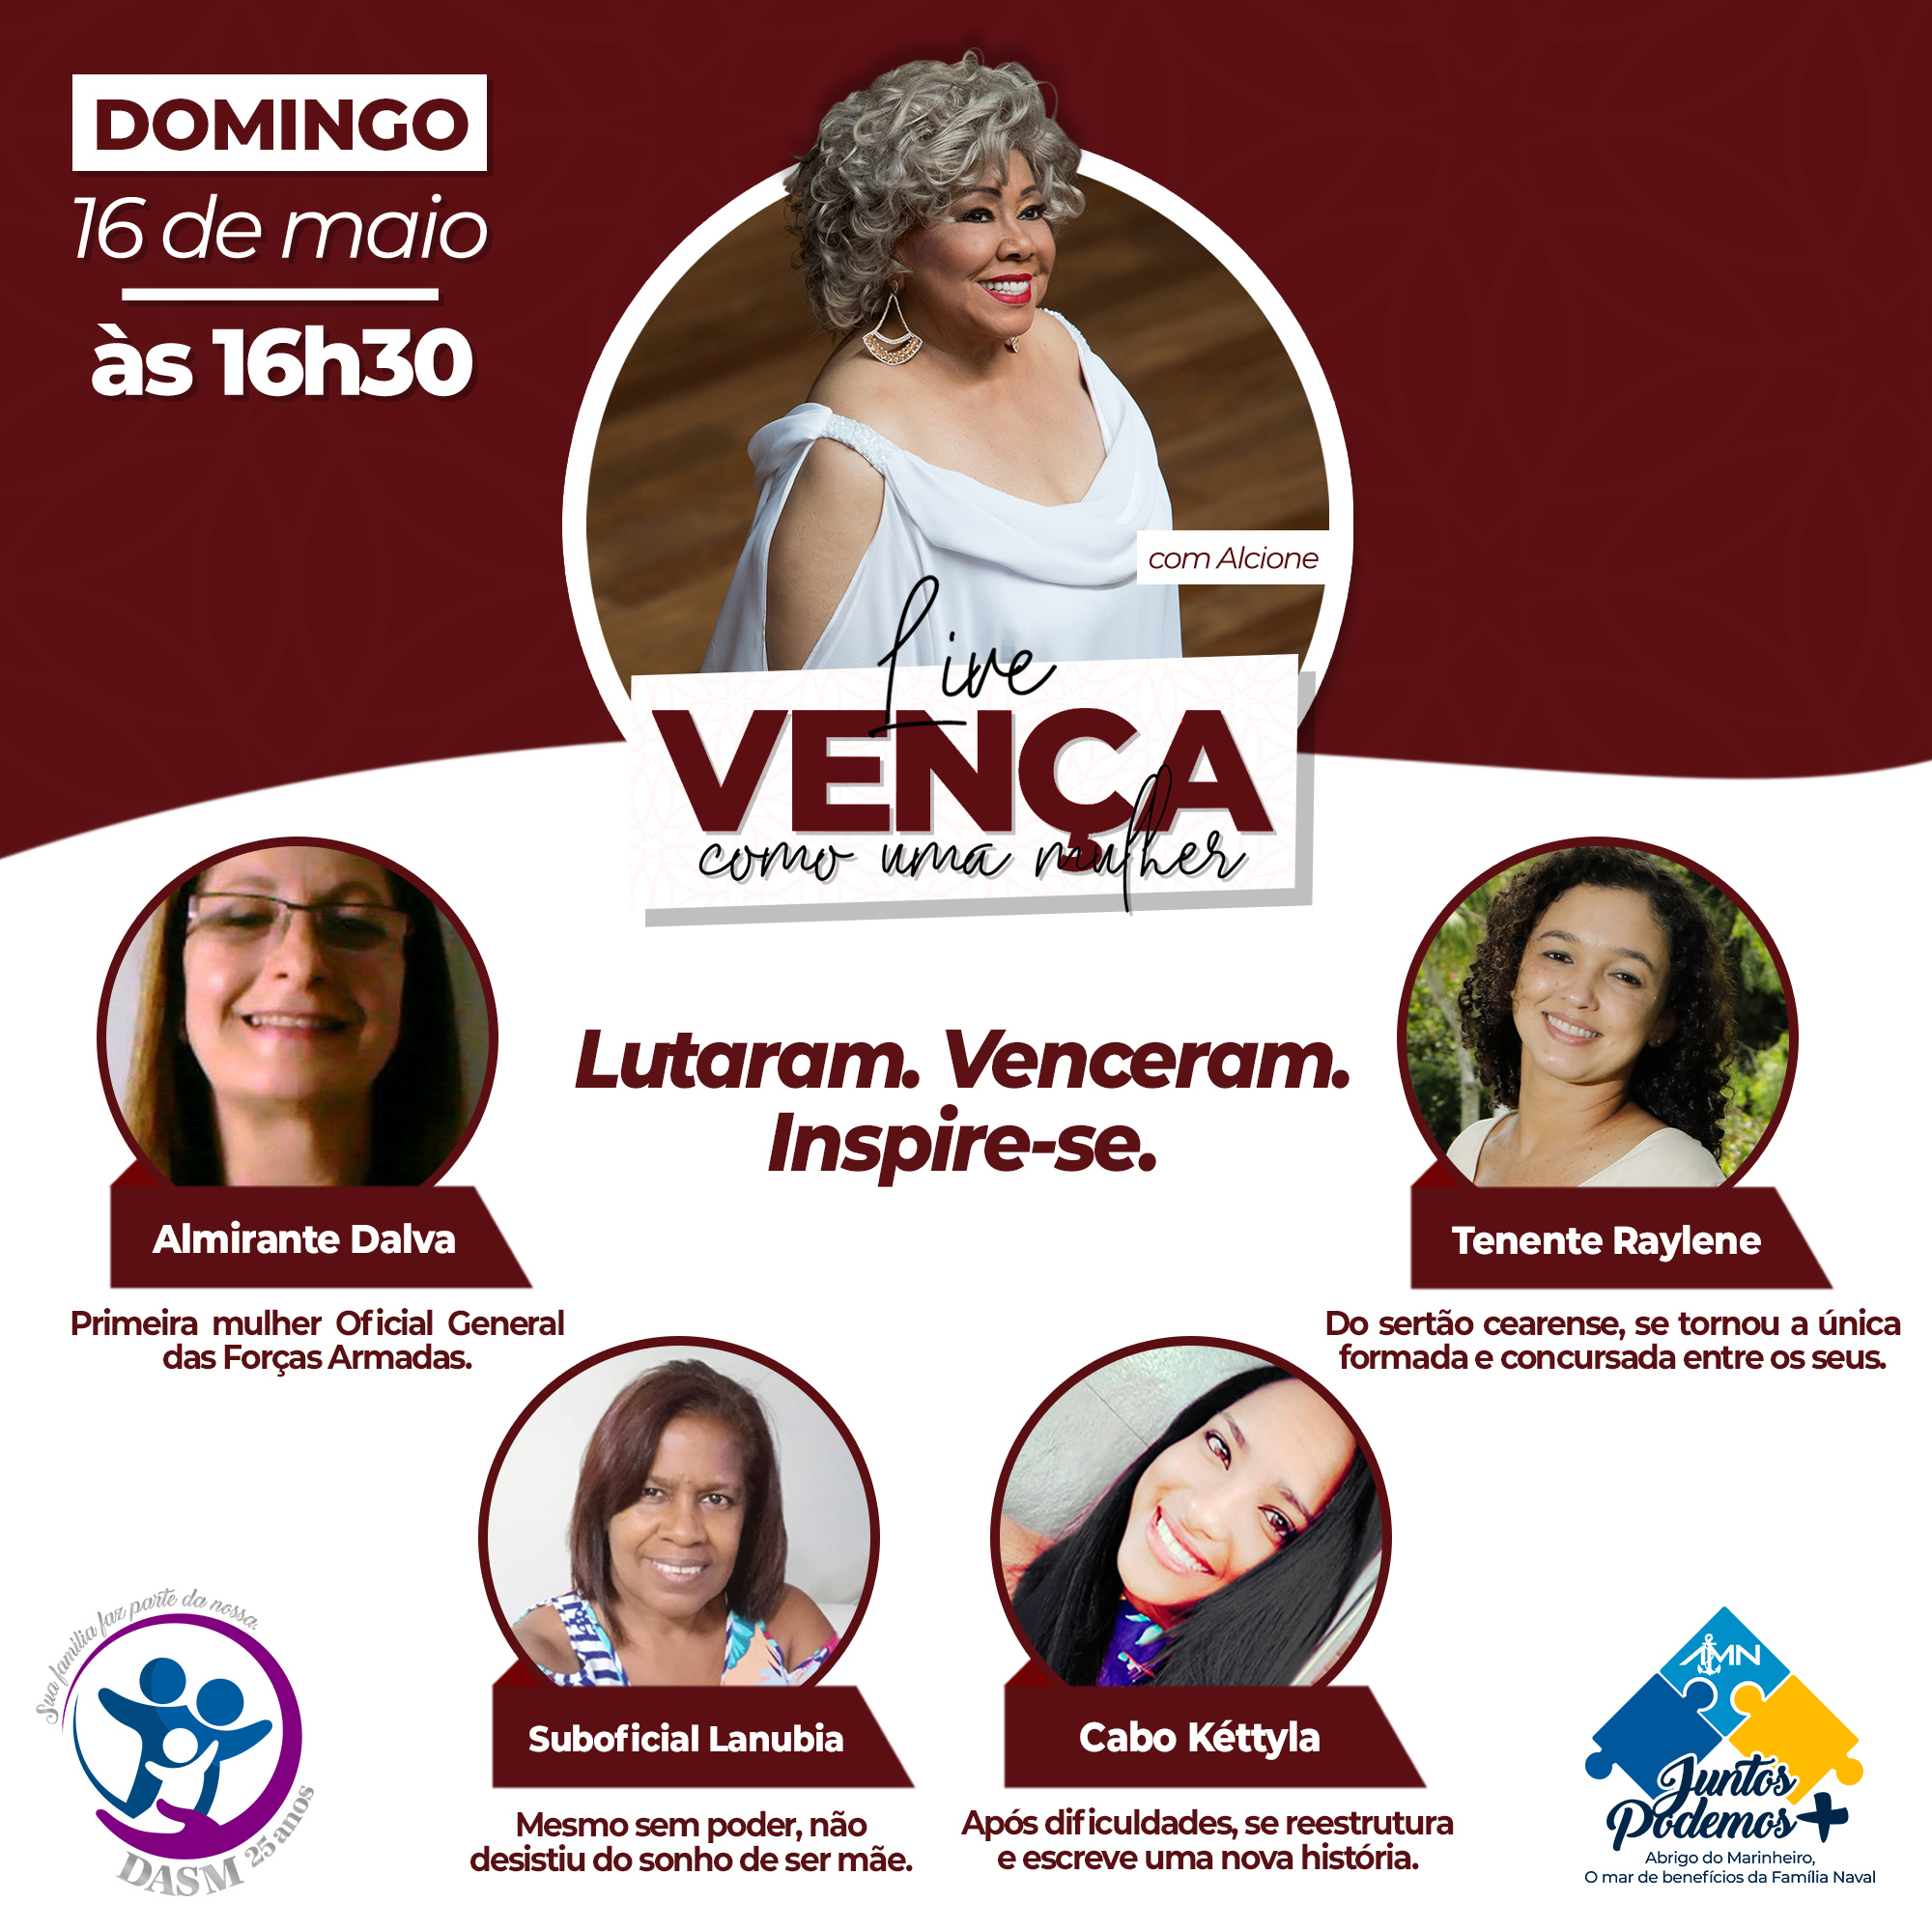 CONHEÇA AS PARTICIPANTES DA "LIVE VENÇA COMO UMA MULHER"